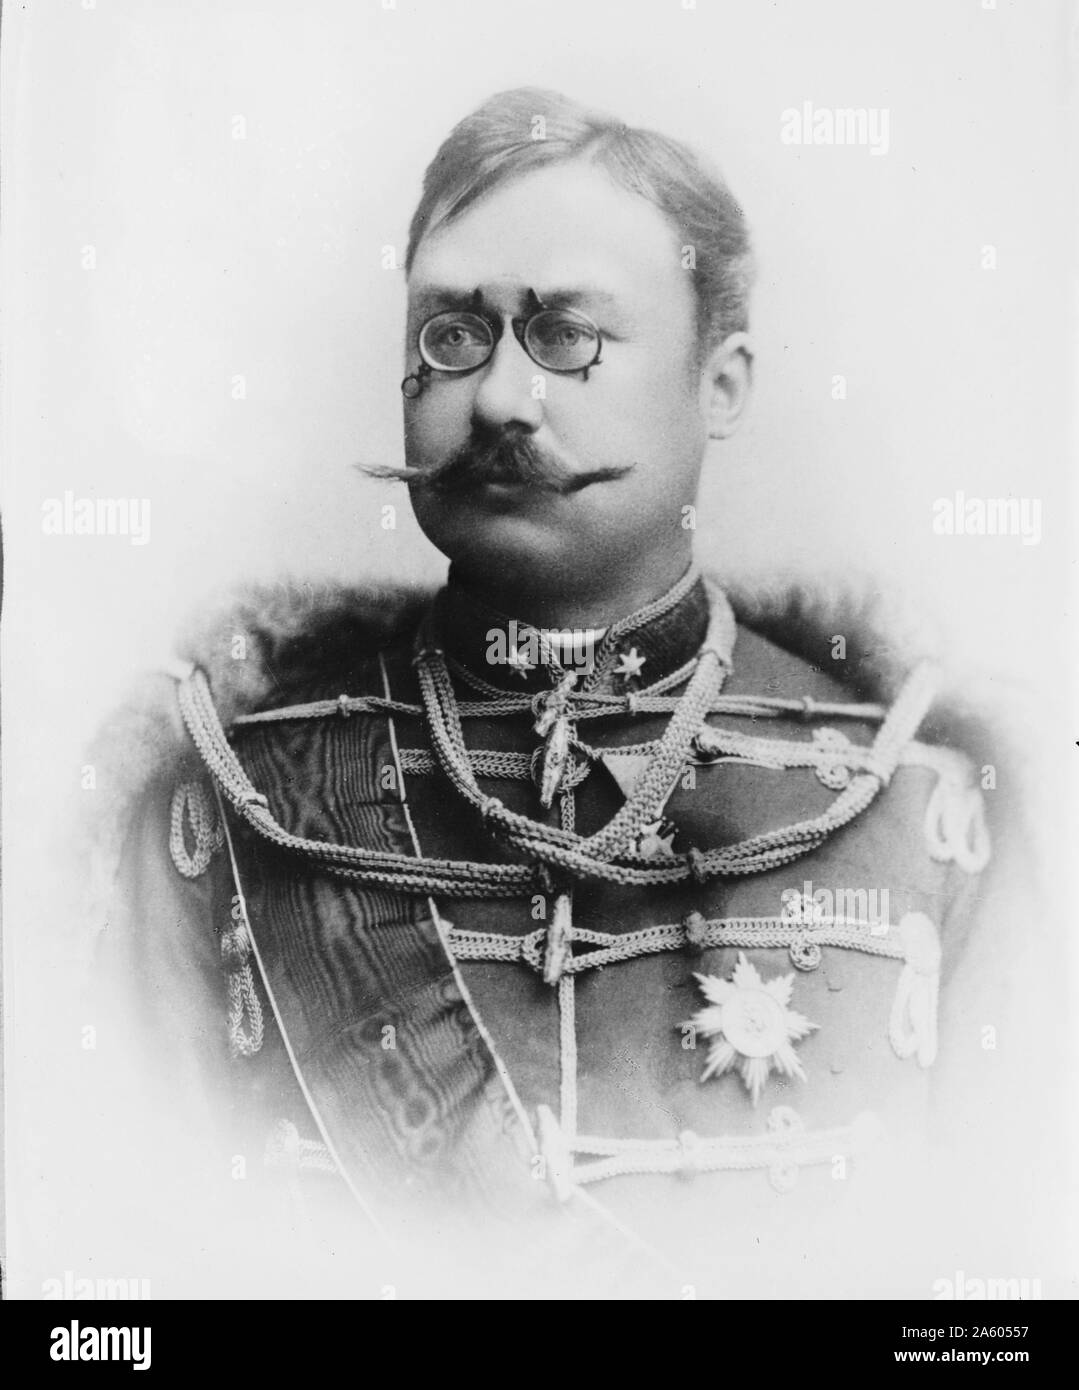 William IV (22 avril 1852 - 25 février 1912) régna en tant que Souverain Grand-duc de Luxembourg du 17 novembre 1905 jusqu'à sa mort. Il succède à son père, Adolphe, Grand Duc de Luxembourg. Il a également eu le titre de duc de Nassau. vers 1910 Banque D'Images